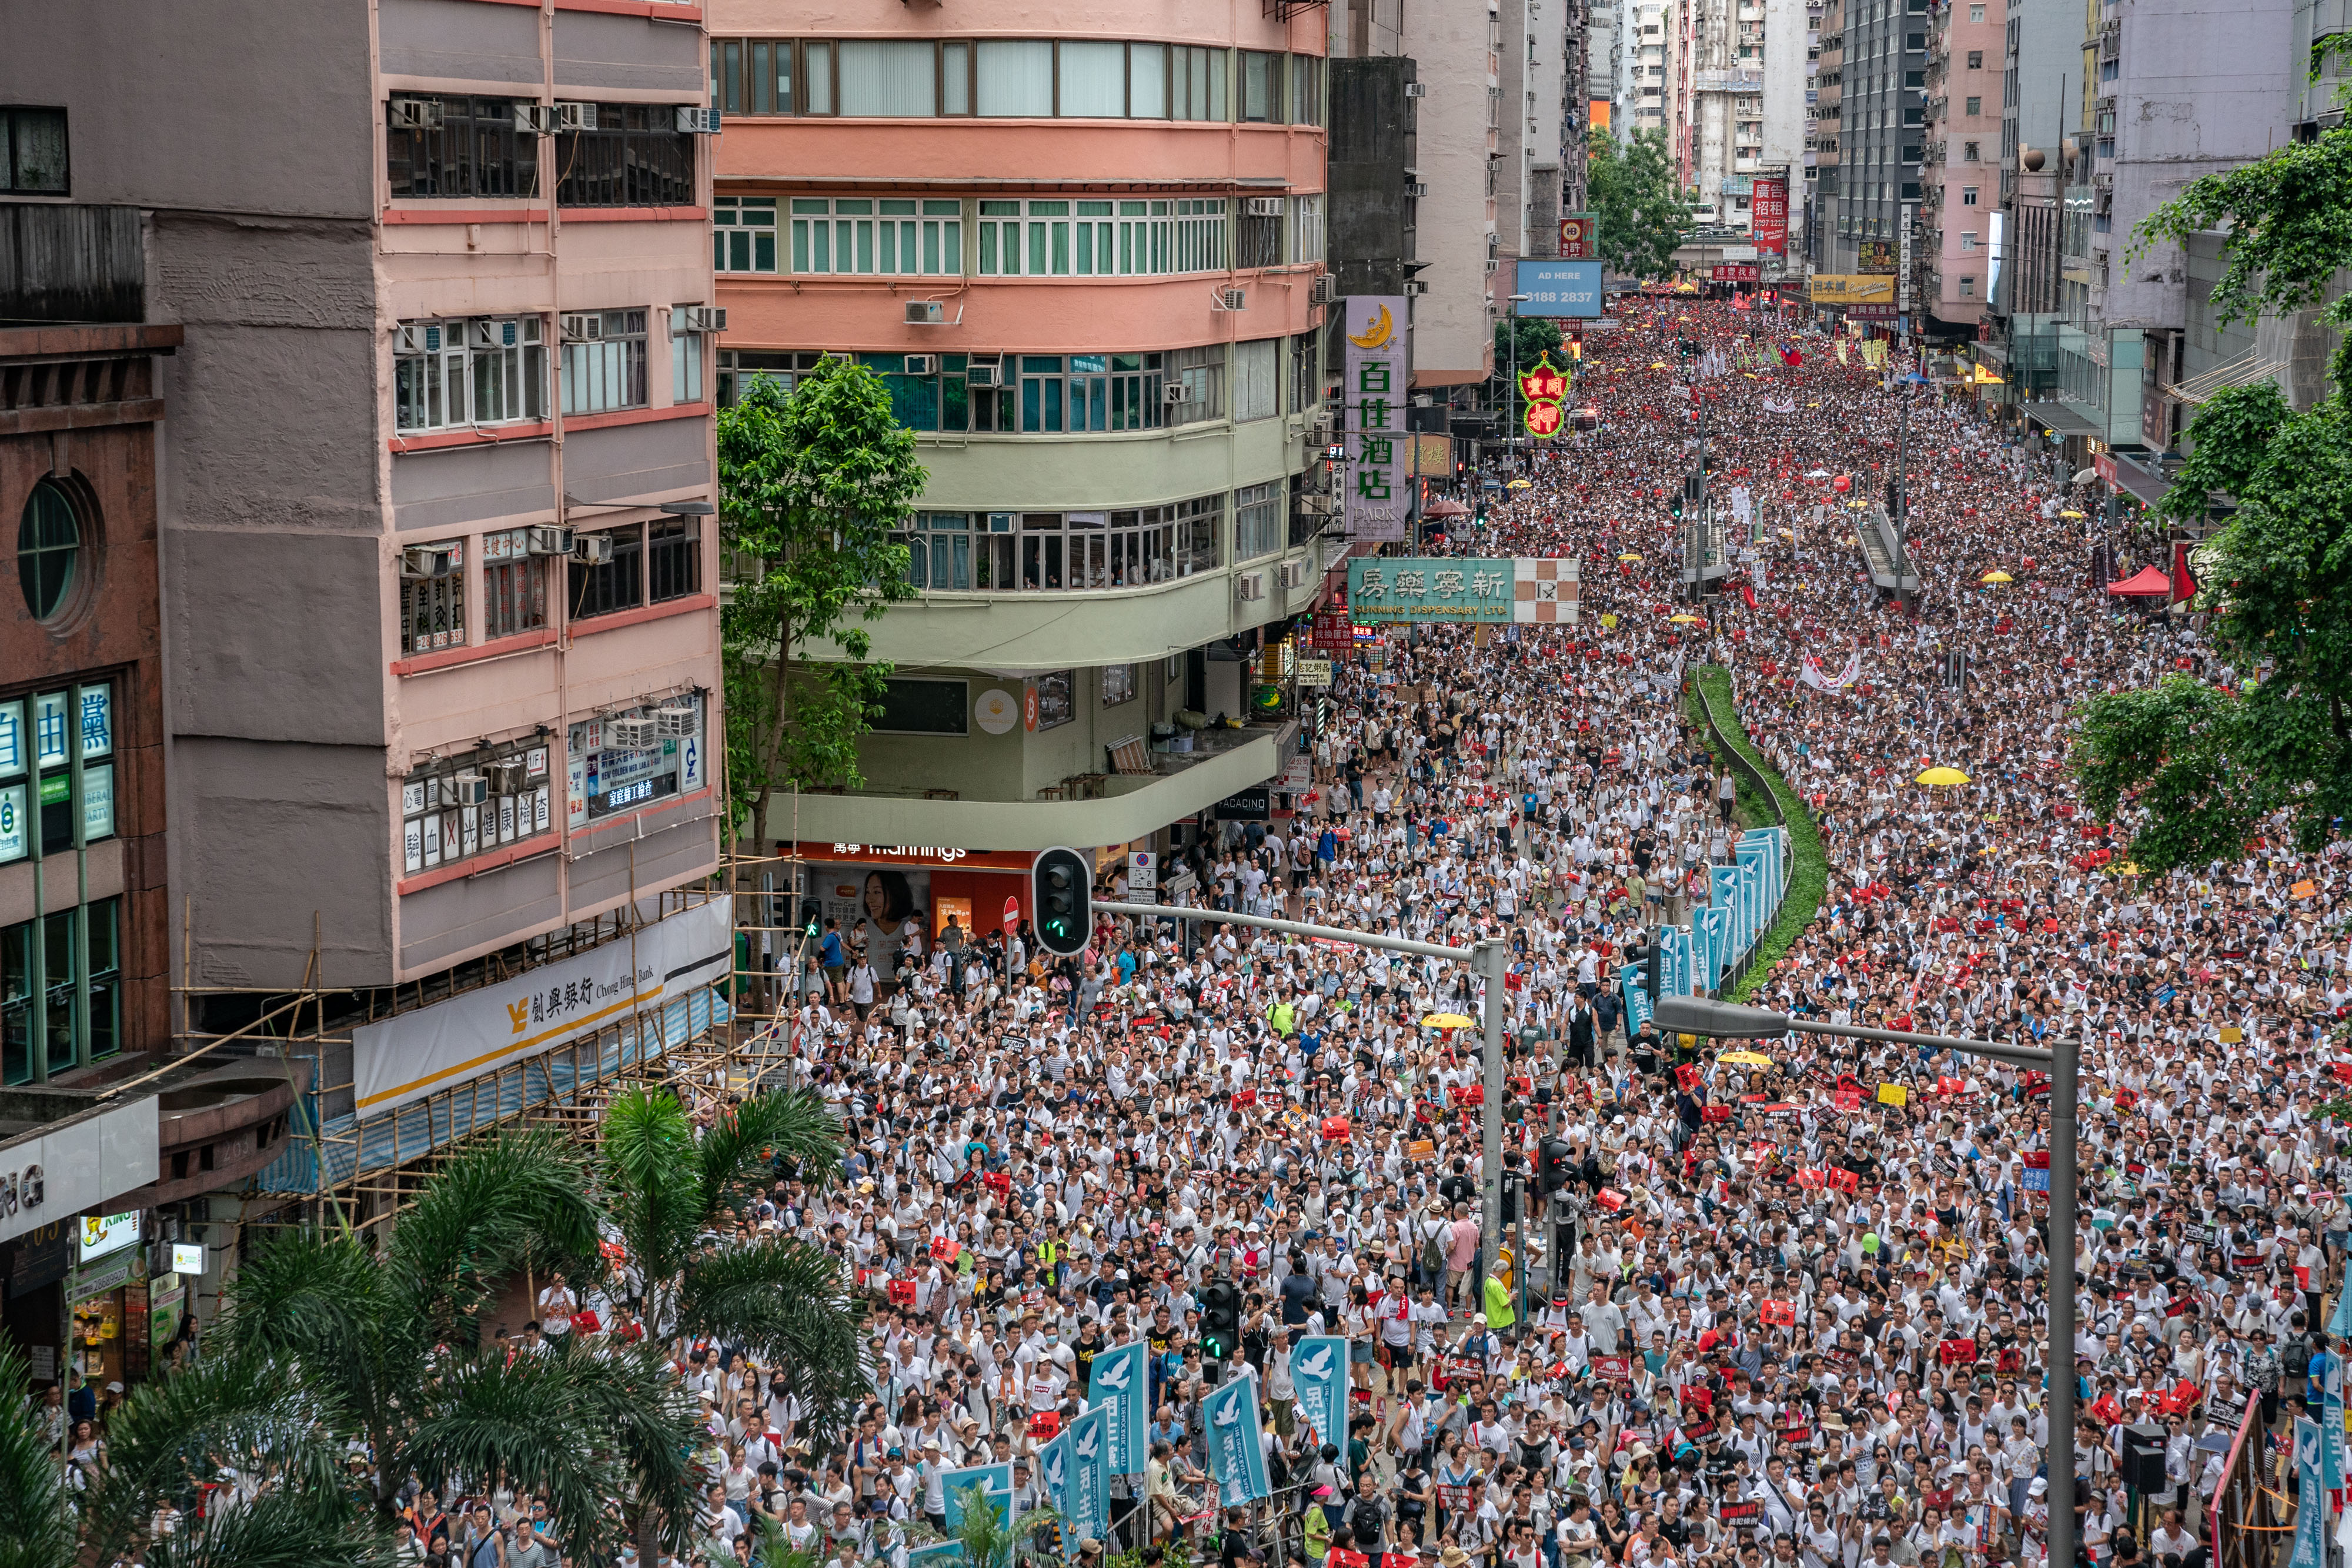 <p><strong>Хонконг </strong></p>

<p>Протести избухнаха това лято в китайския полуавтономен район Хонконг заради законопроект, който щеше да позволи екстрадирането и даването под съд на обвинени в престъпления лица в континентален Китай. Под натиска на демонстрантите текстът бе оттеглен, но това не внесе спокойствие сред активистите, които се опасяват, че Китай опитва да разшири влиянието си и да отнеме свободите от западен тип, на които се радва бившата британска колония.</p>